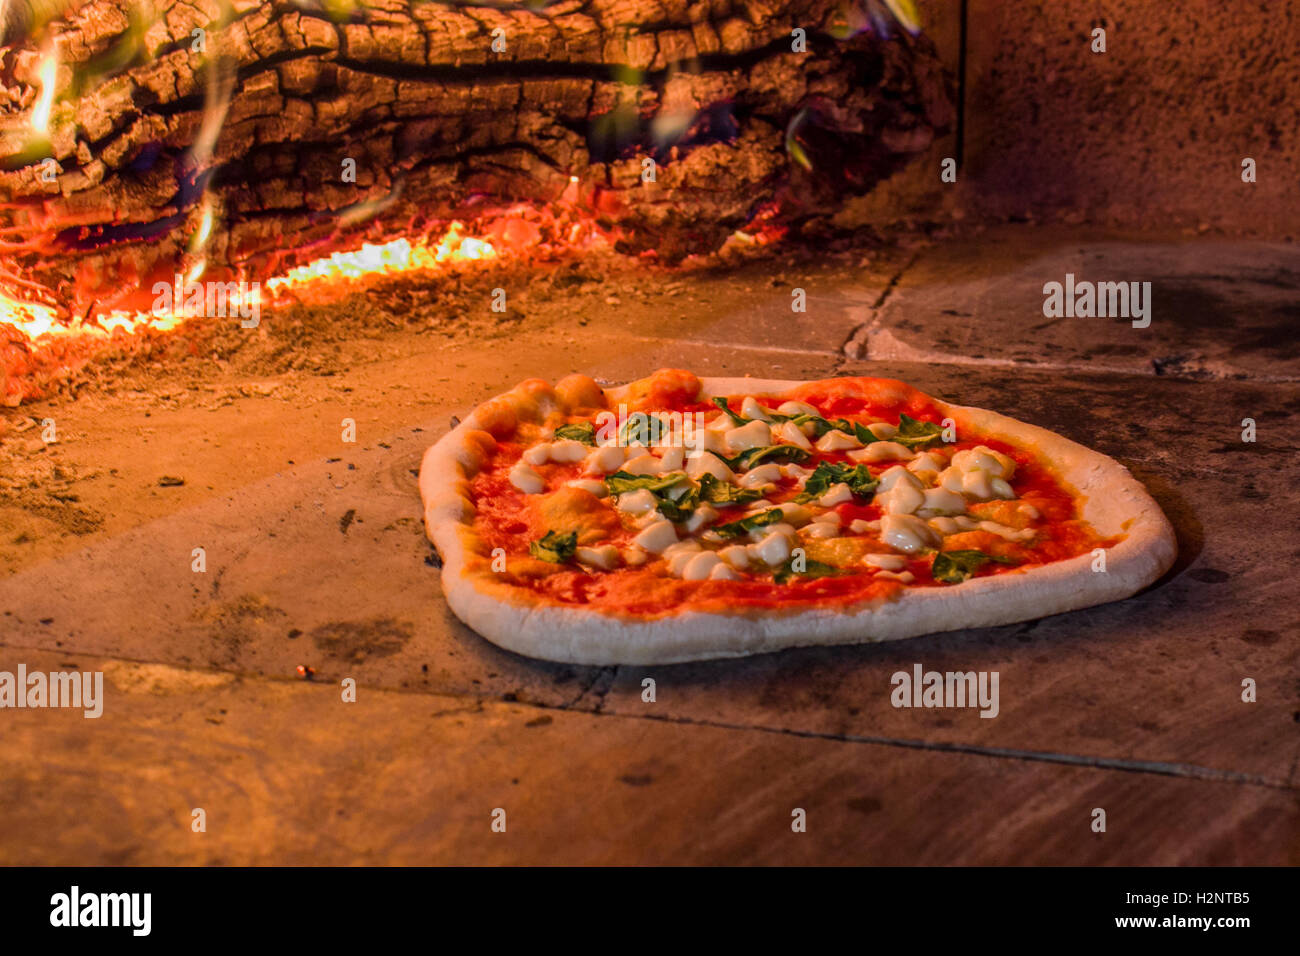 https://c8.alamy.com/compes/h2ntb5/pizza-en-un-horno-de-piedra-h2ntb5.jpg